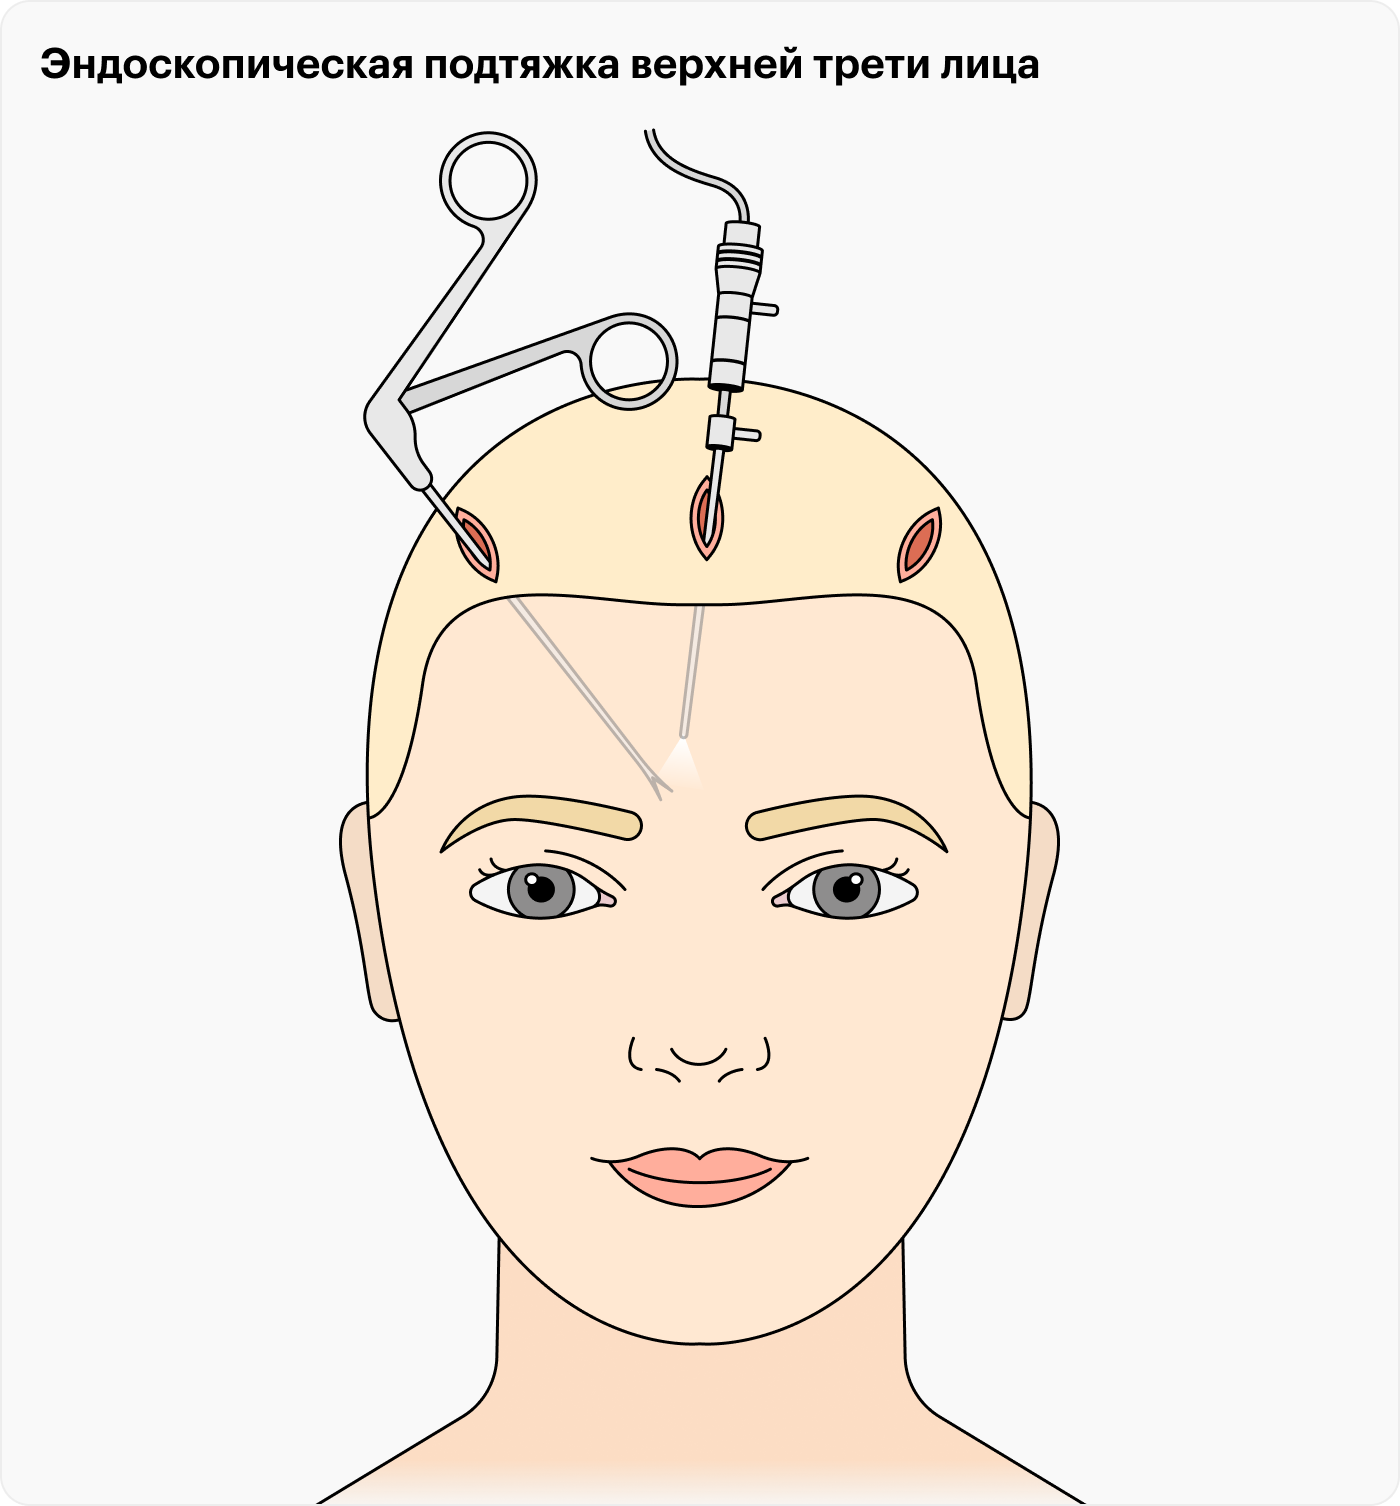 Для эндоскопически-ассистированного омоложения верхней трети лица достаточно небольших проколов, через которые вводят хирургические инструменты и эндоскоп